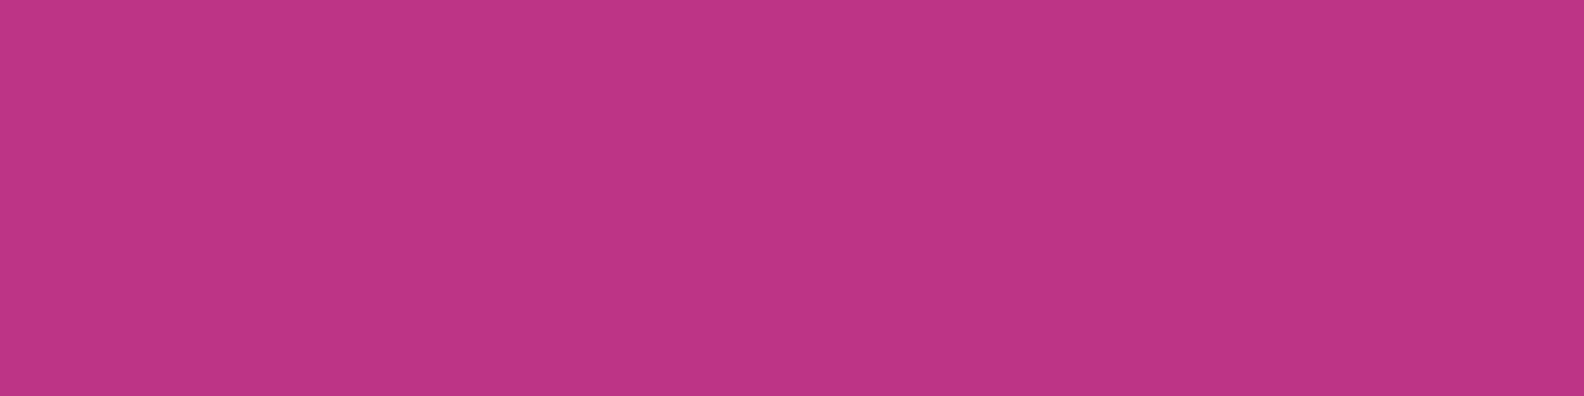 1584x396 Medium Red-violet Solid Color Background